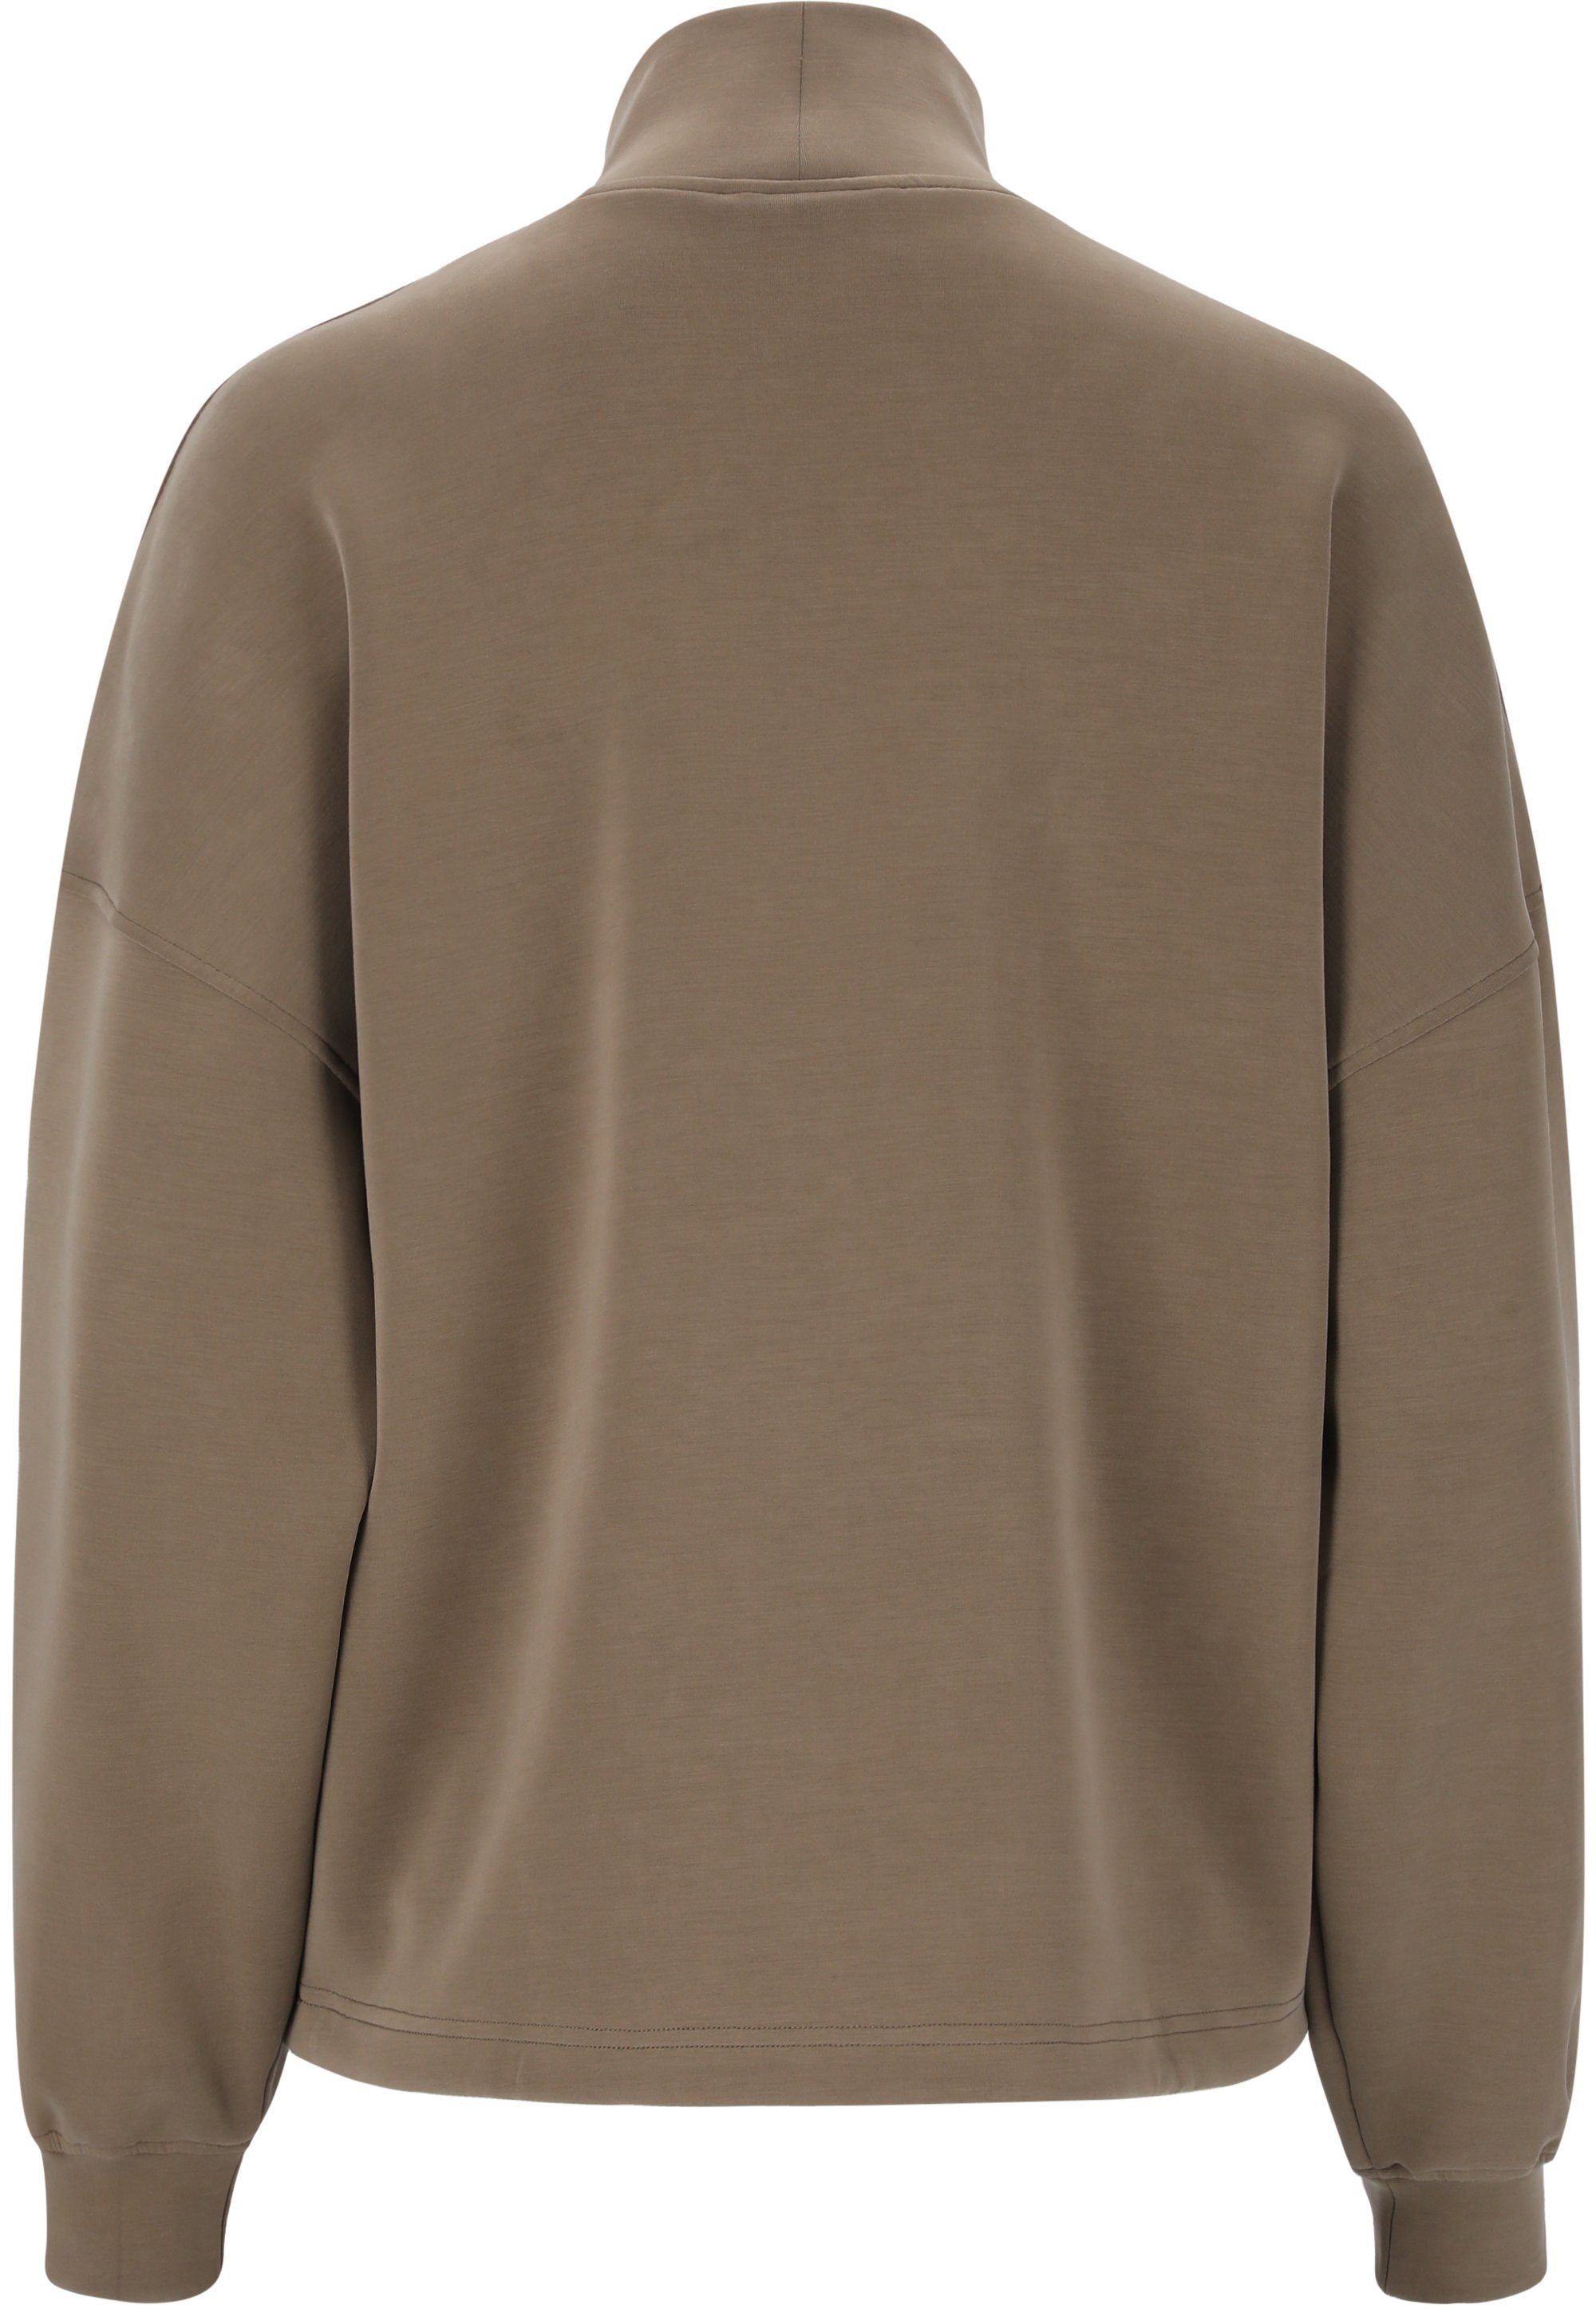 mit und hohem Tragekomfort Kragen camelfarben ATHLECIA Paris Sweatshirt